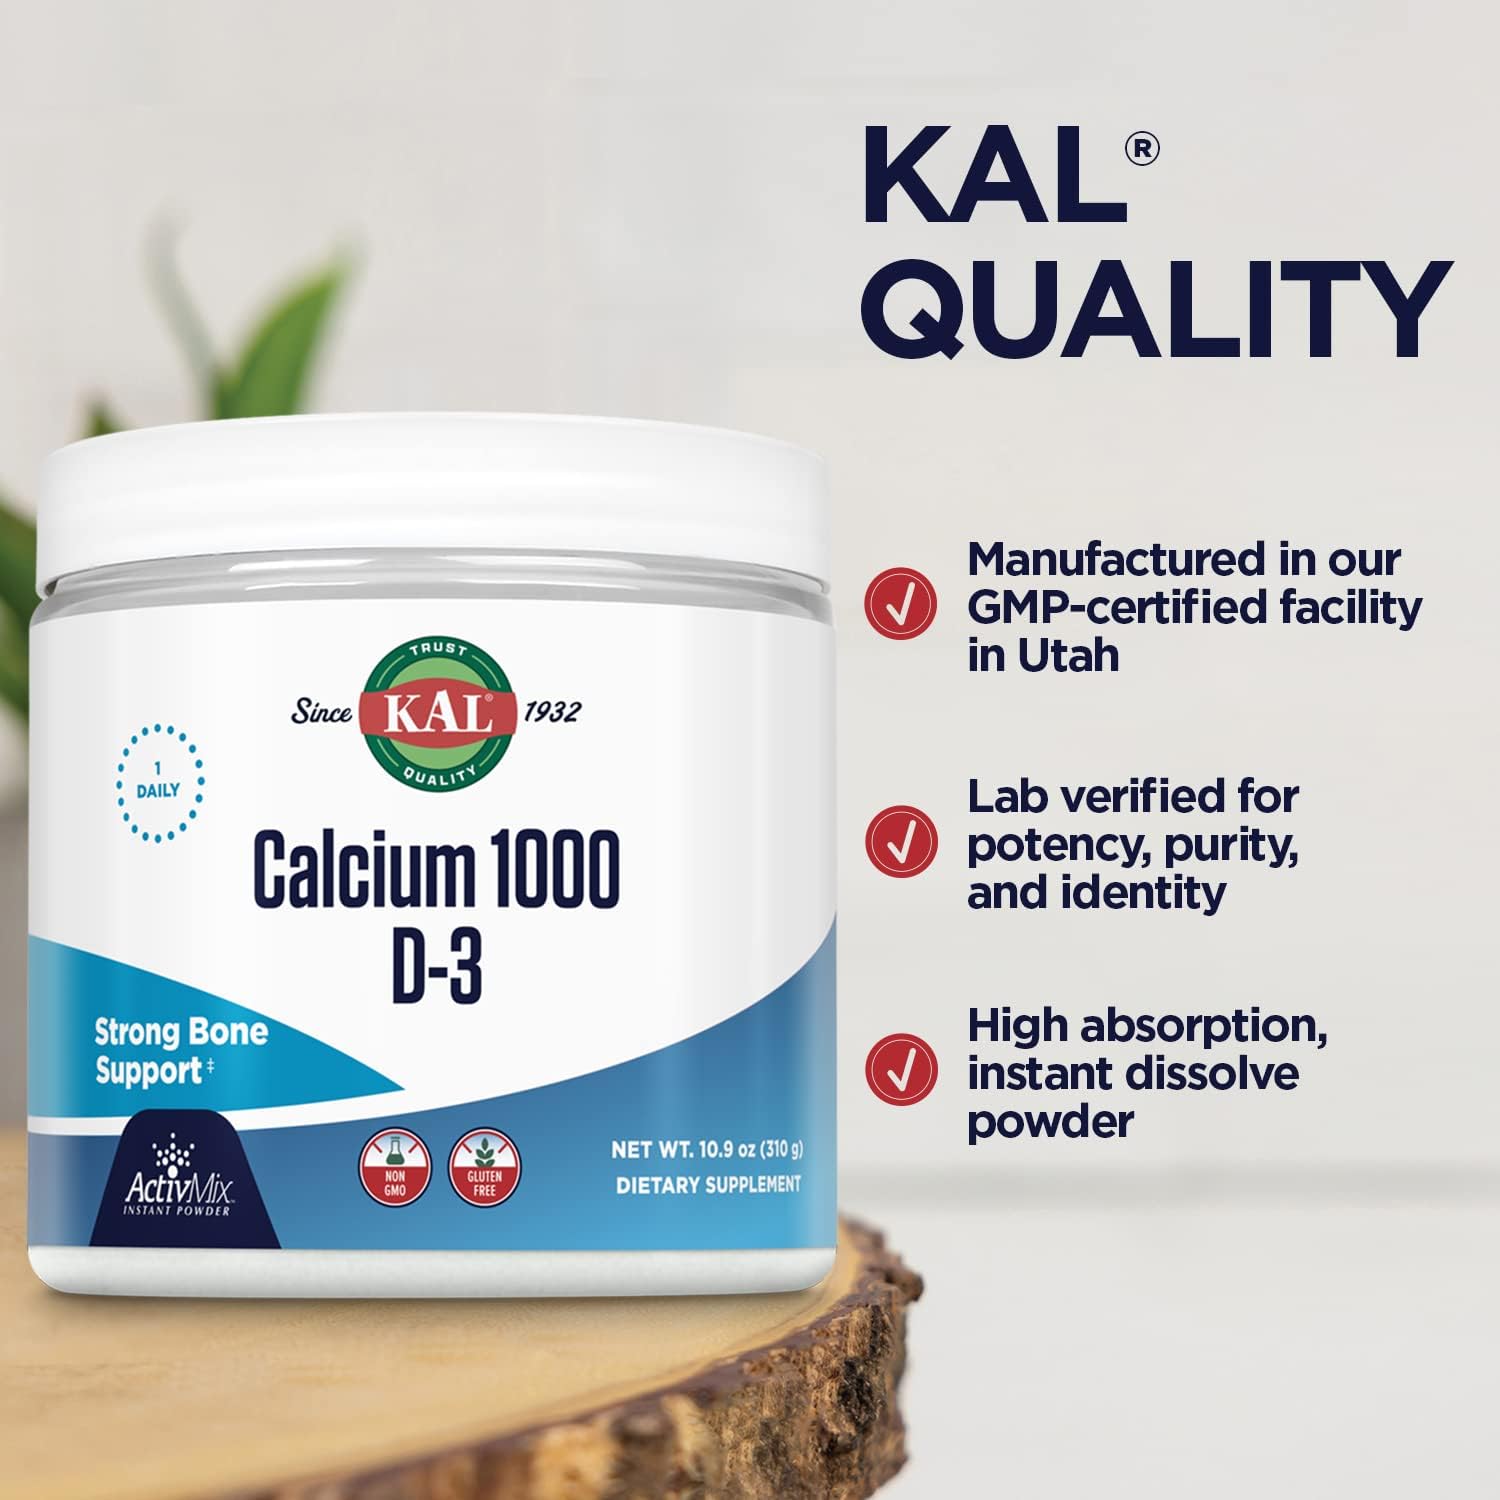  KAL Calcium Vitamin D-3 ActivMix, Powder Calcium Supplement